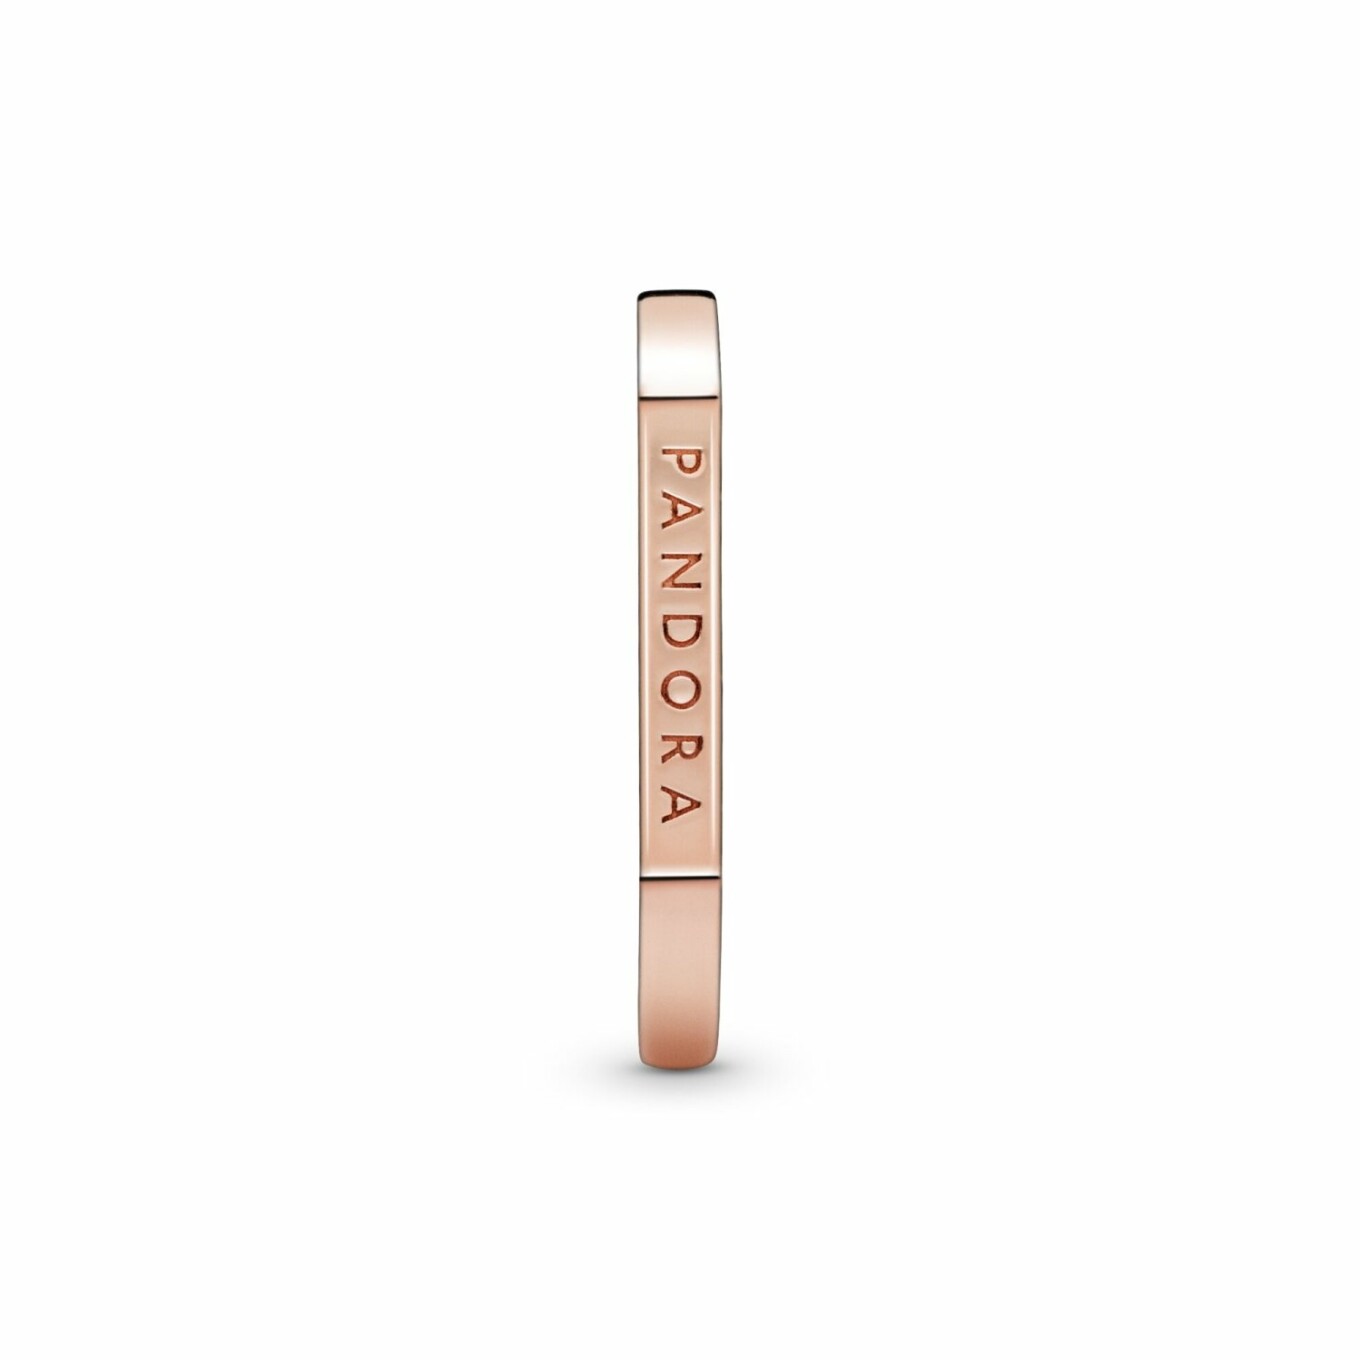 Bague Pandora Signature empilable barre logo en métal doré rose, taille 56